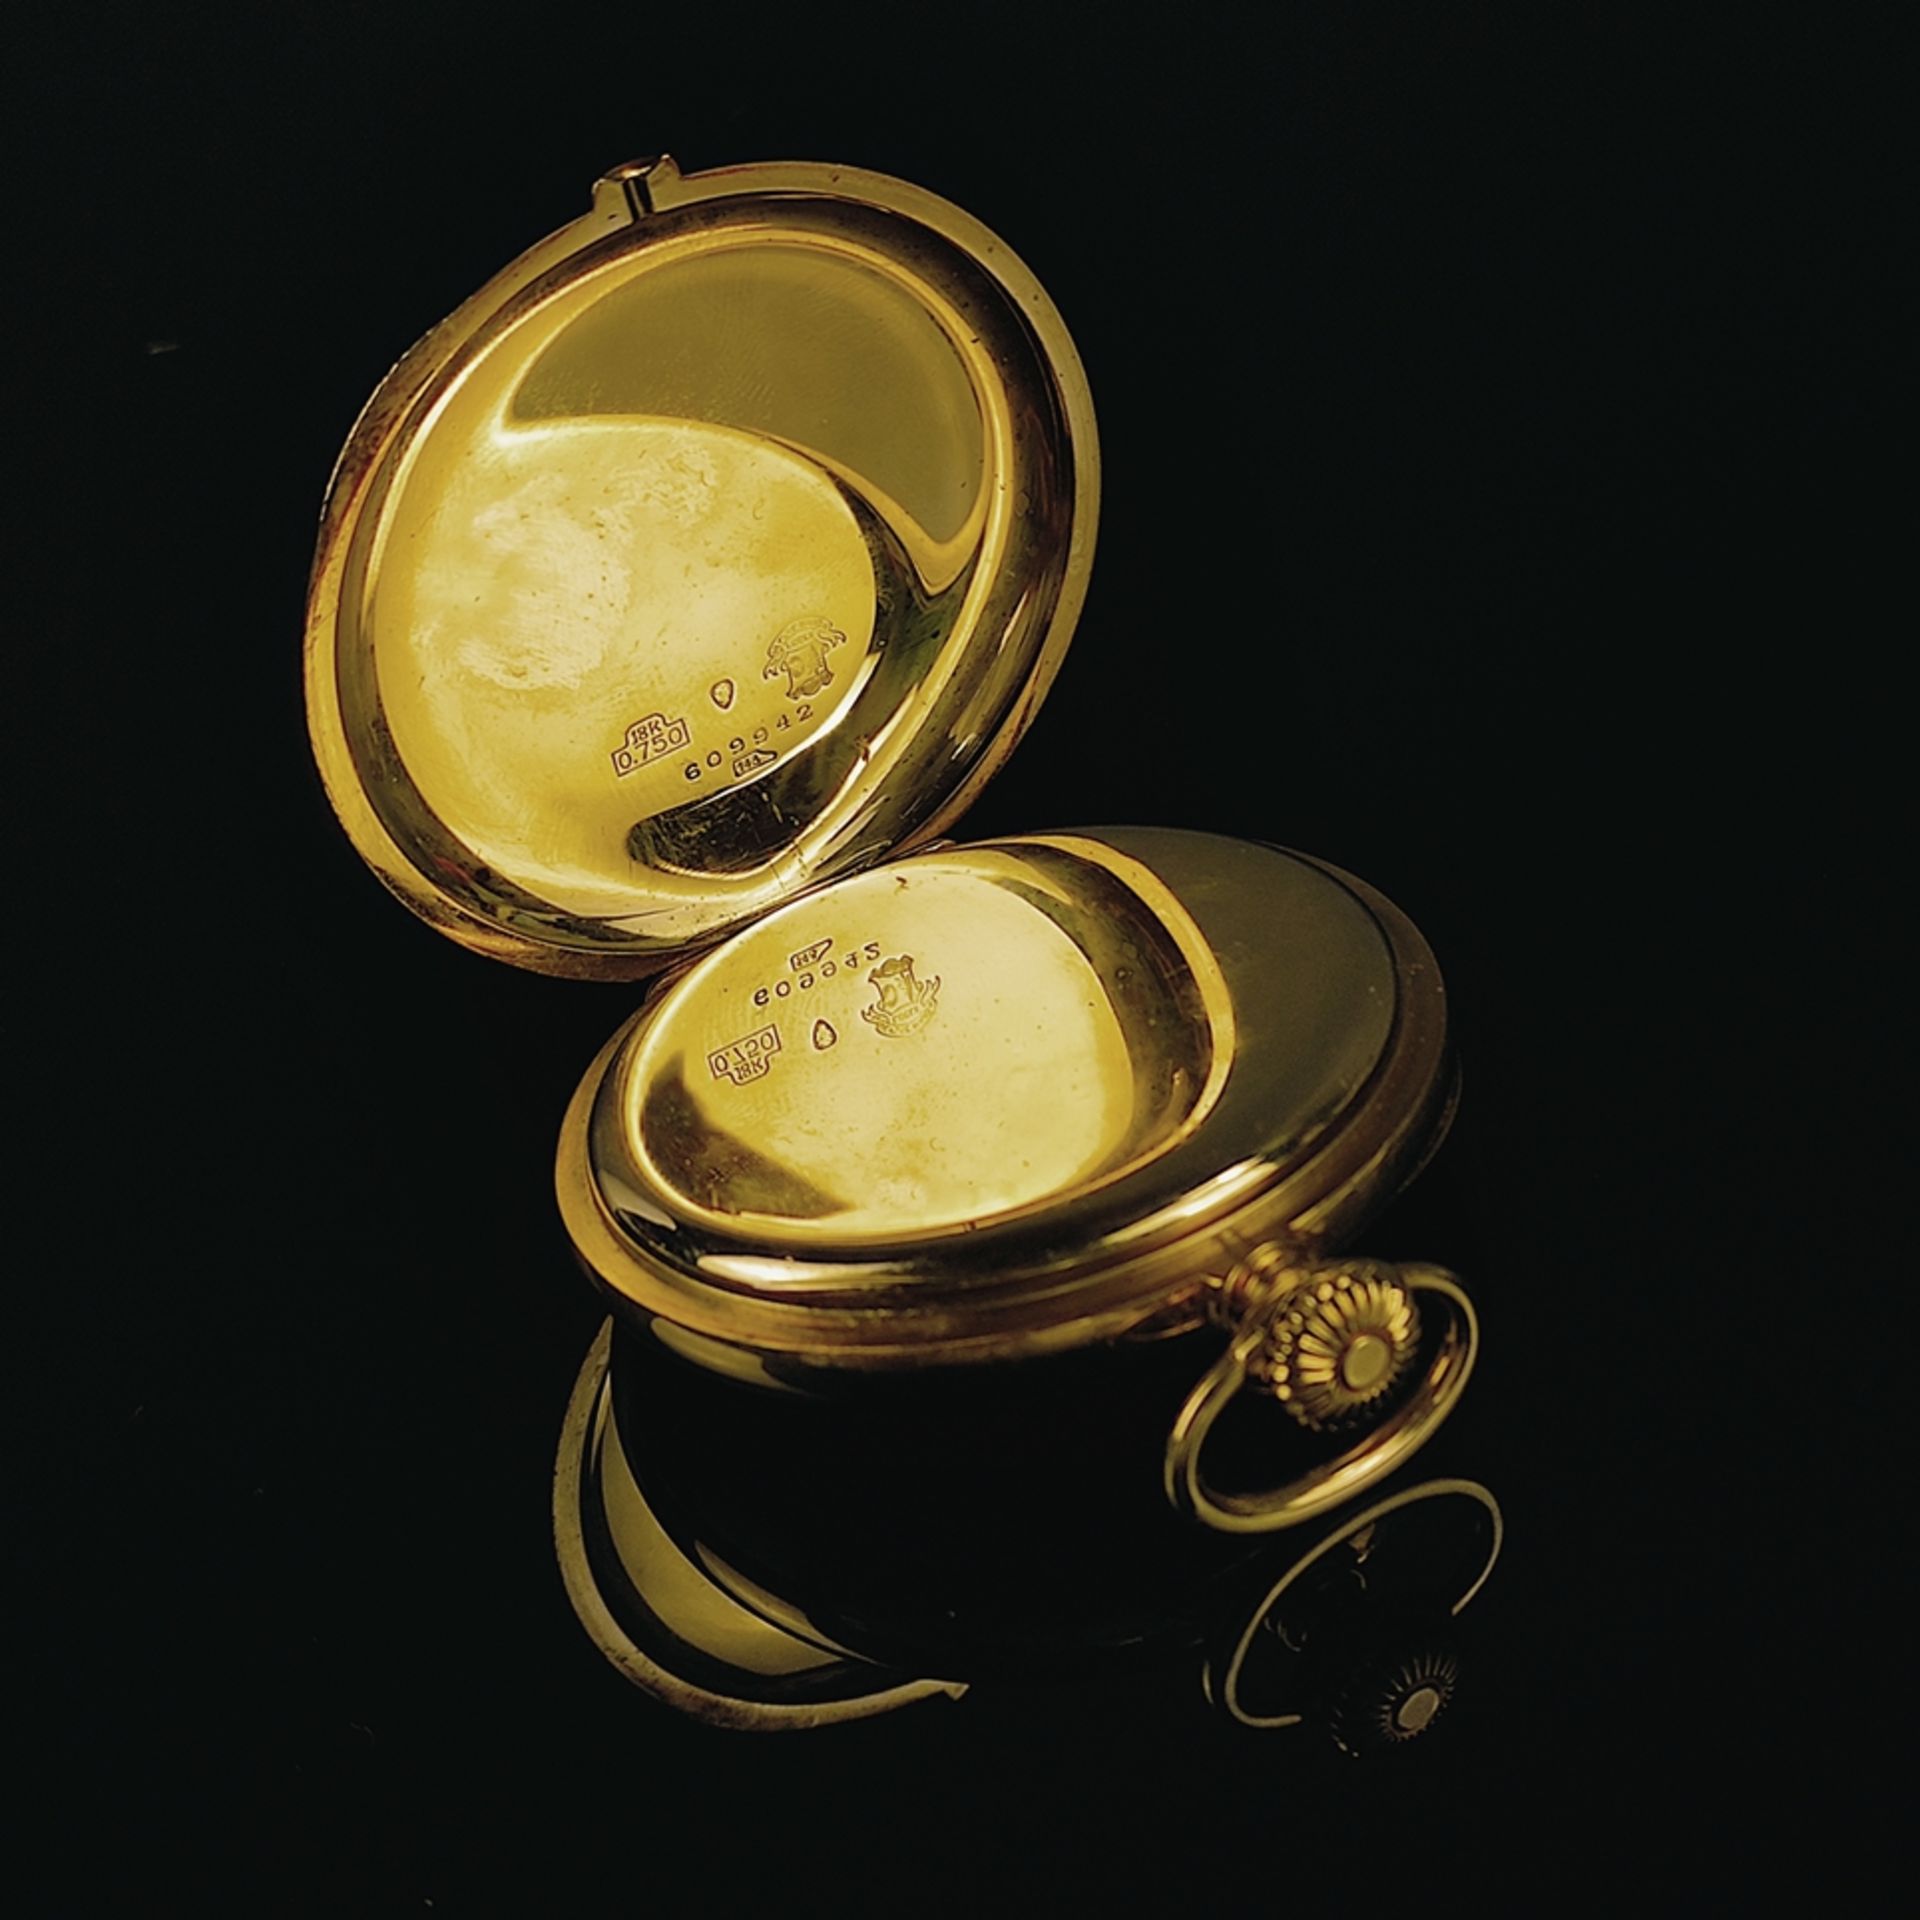 Taschenuhr, Chronomètre Ulysse Nardin Locle Suisse, 750/18K Gelbgold, Gesamtgewicht 104,3g, rundes  - Bild 4 aus 4